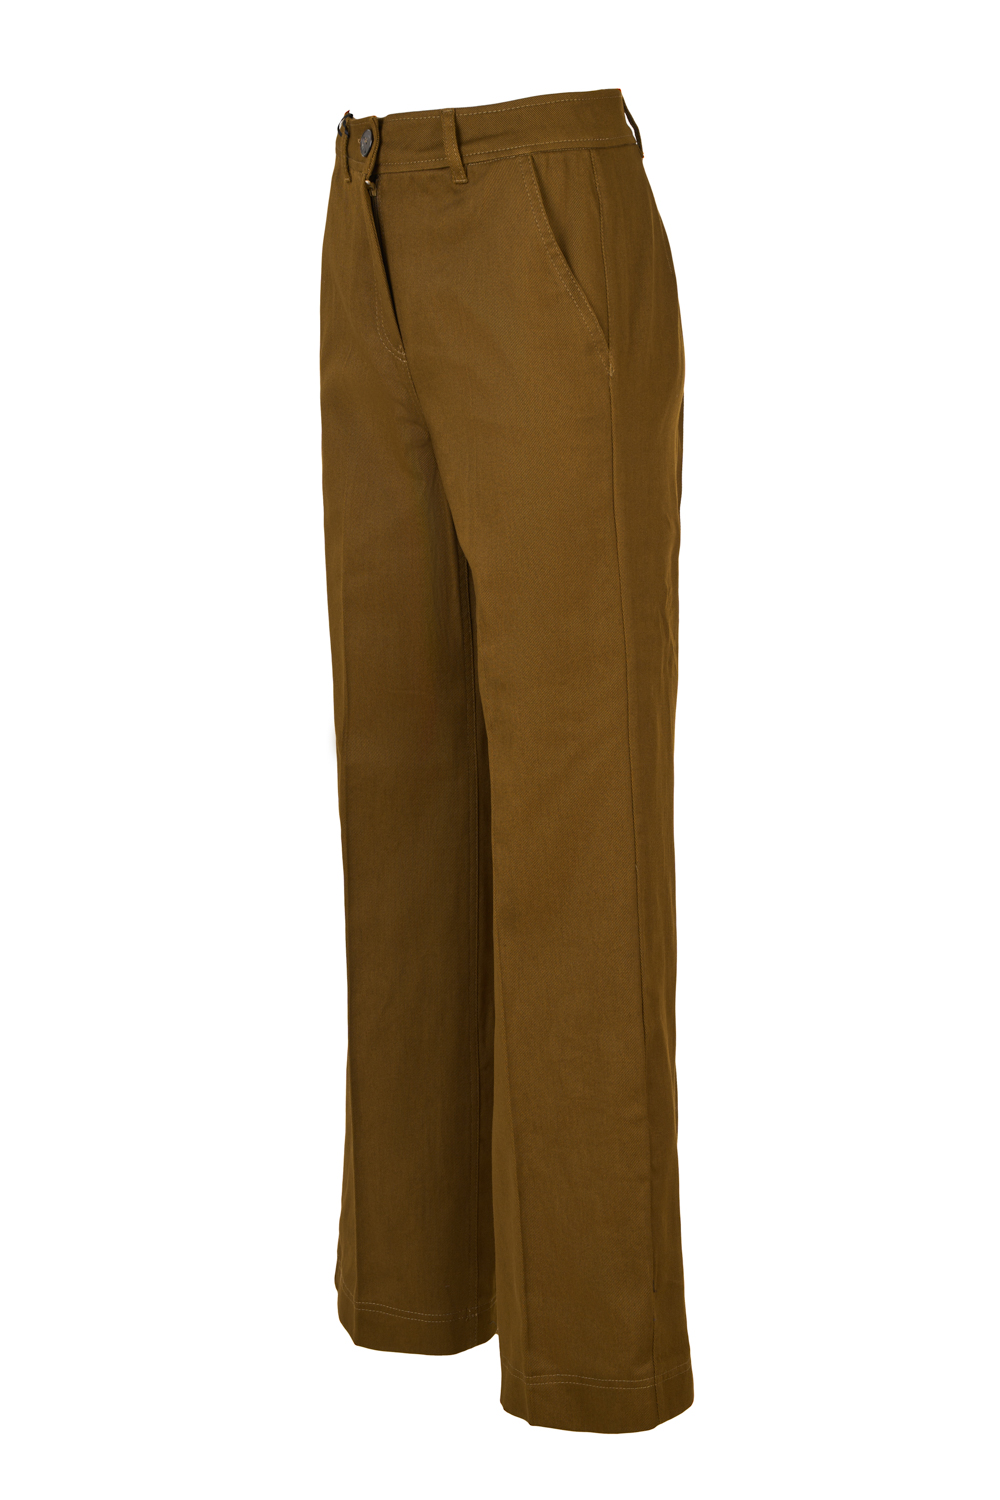 Wider Legged Cotton Trousers (Marella)